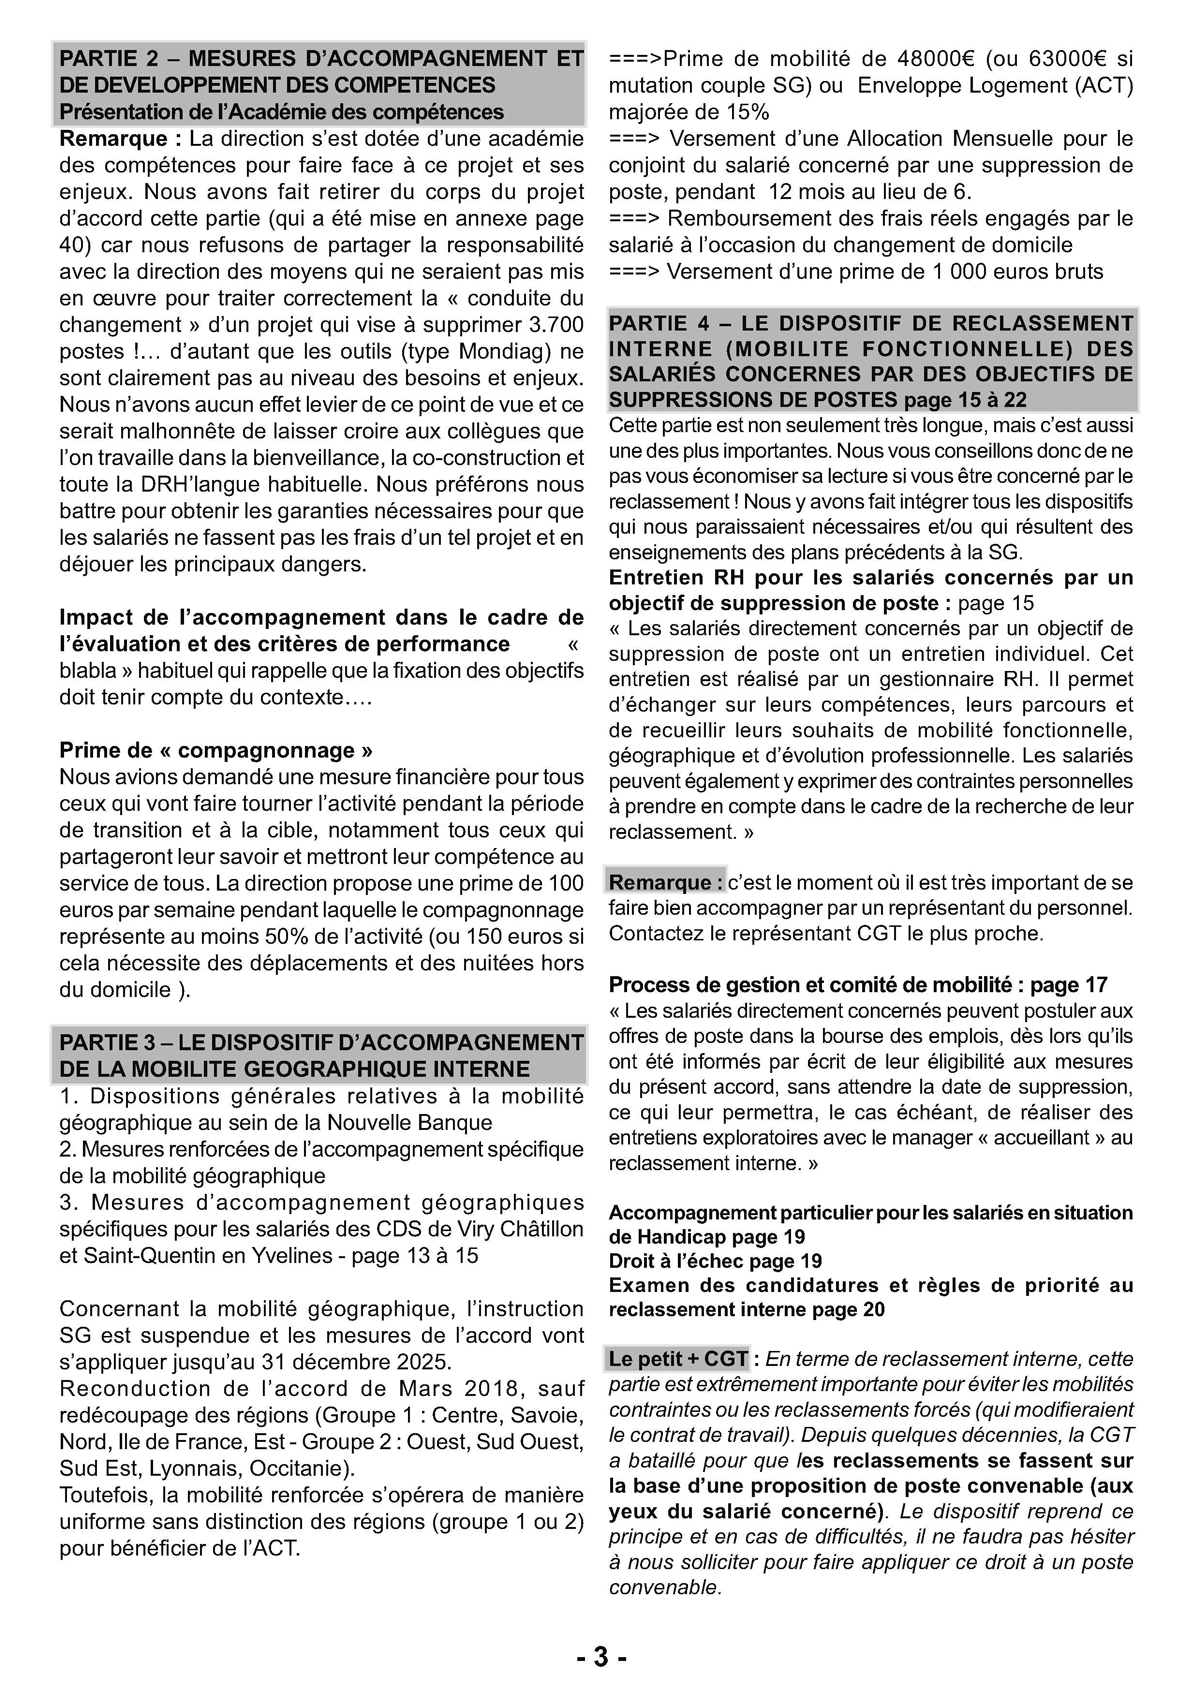 IDécryptage CGT du projet d'accord Emploi - Fusion SG CDN - 11 février 2022 (pages 3 et 4)